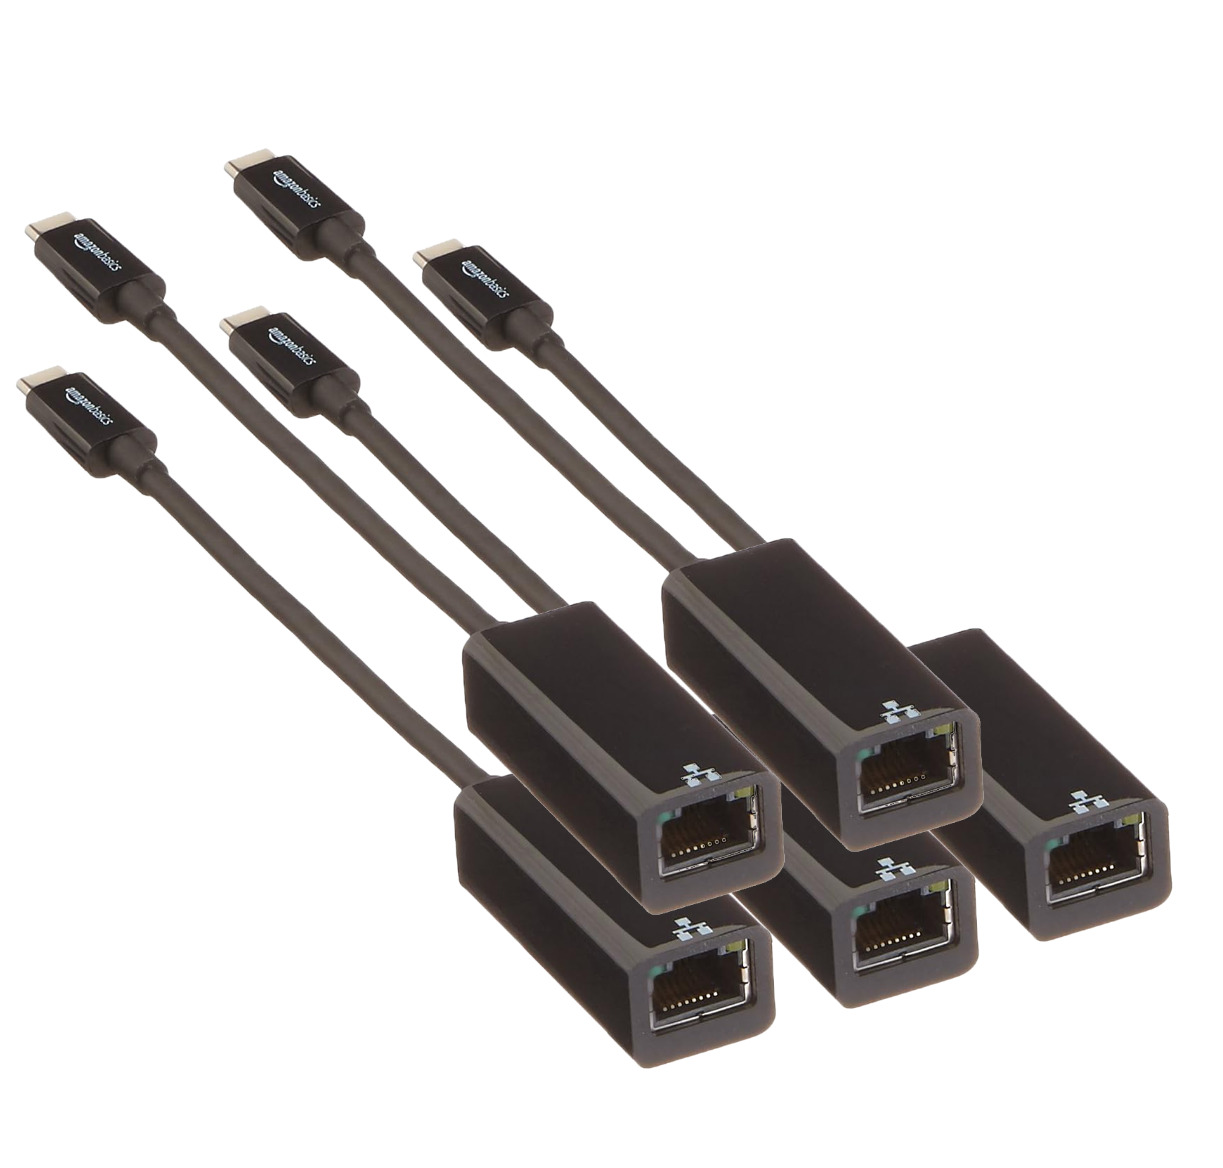 5-Pack Amazon Basics USB 3.1 Type-C Gigabit Ethernet Adapters for Mac/PC